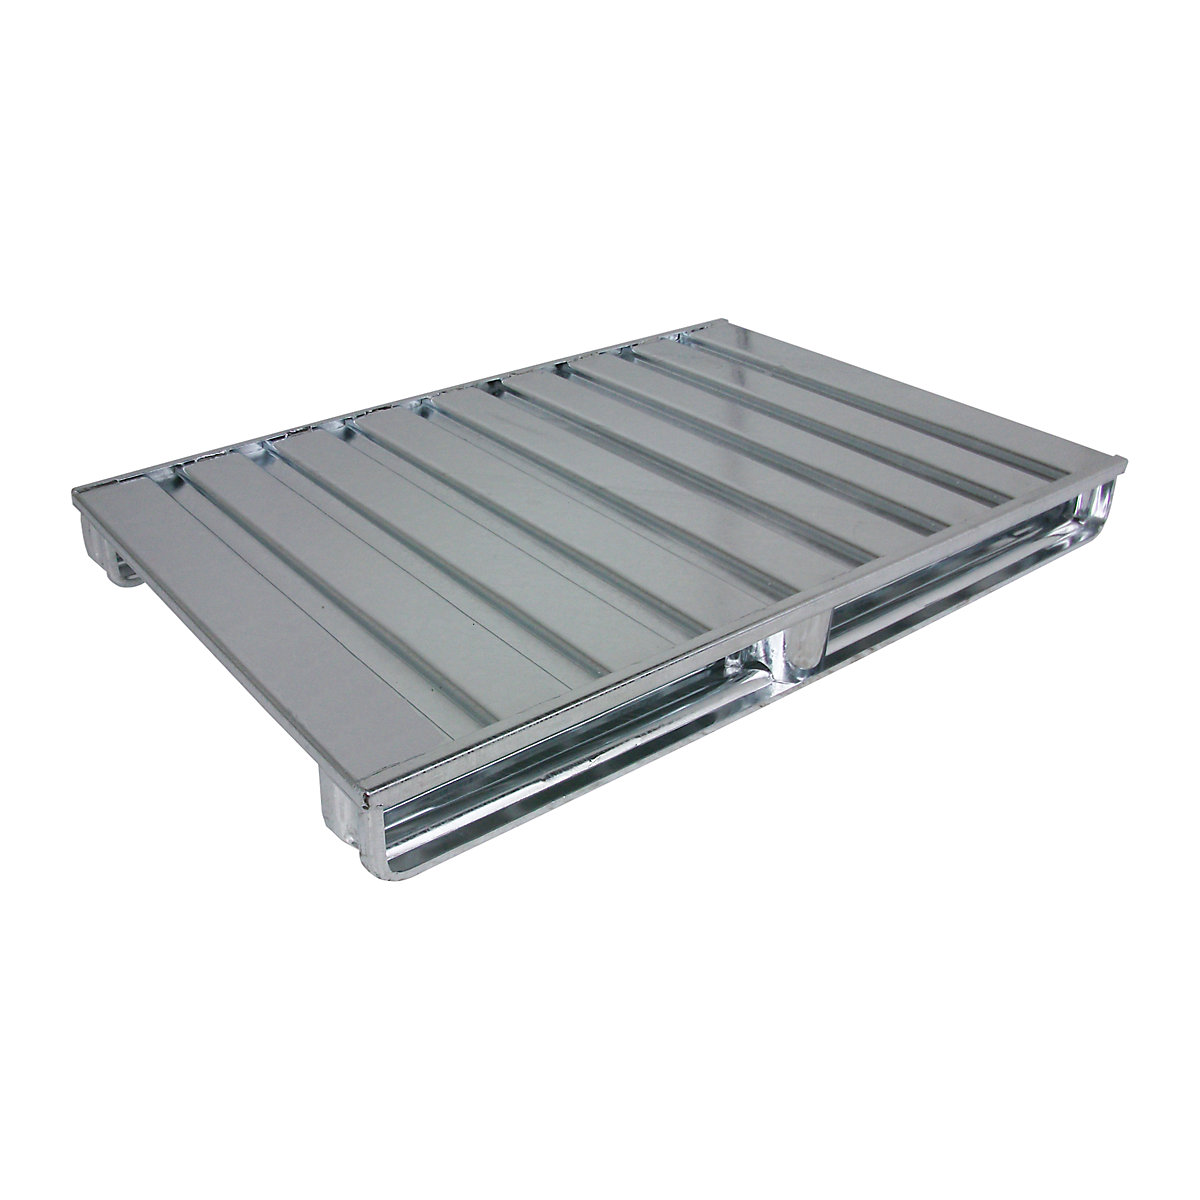 Palete plana de aço – Heson, CxL 1000 x 800 mm, capacidade de carga 2000 kg, galvanizado-4